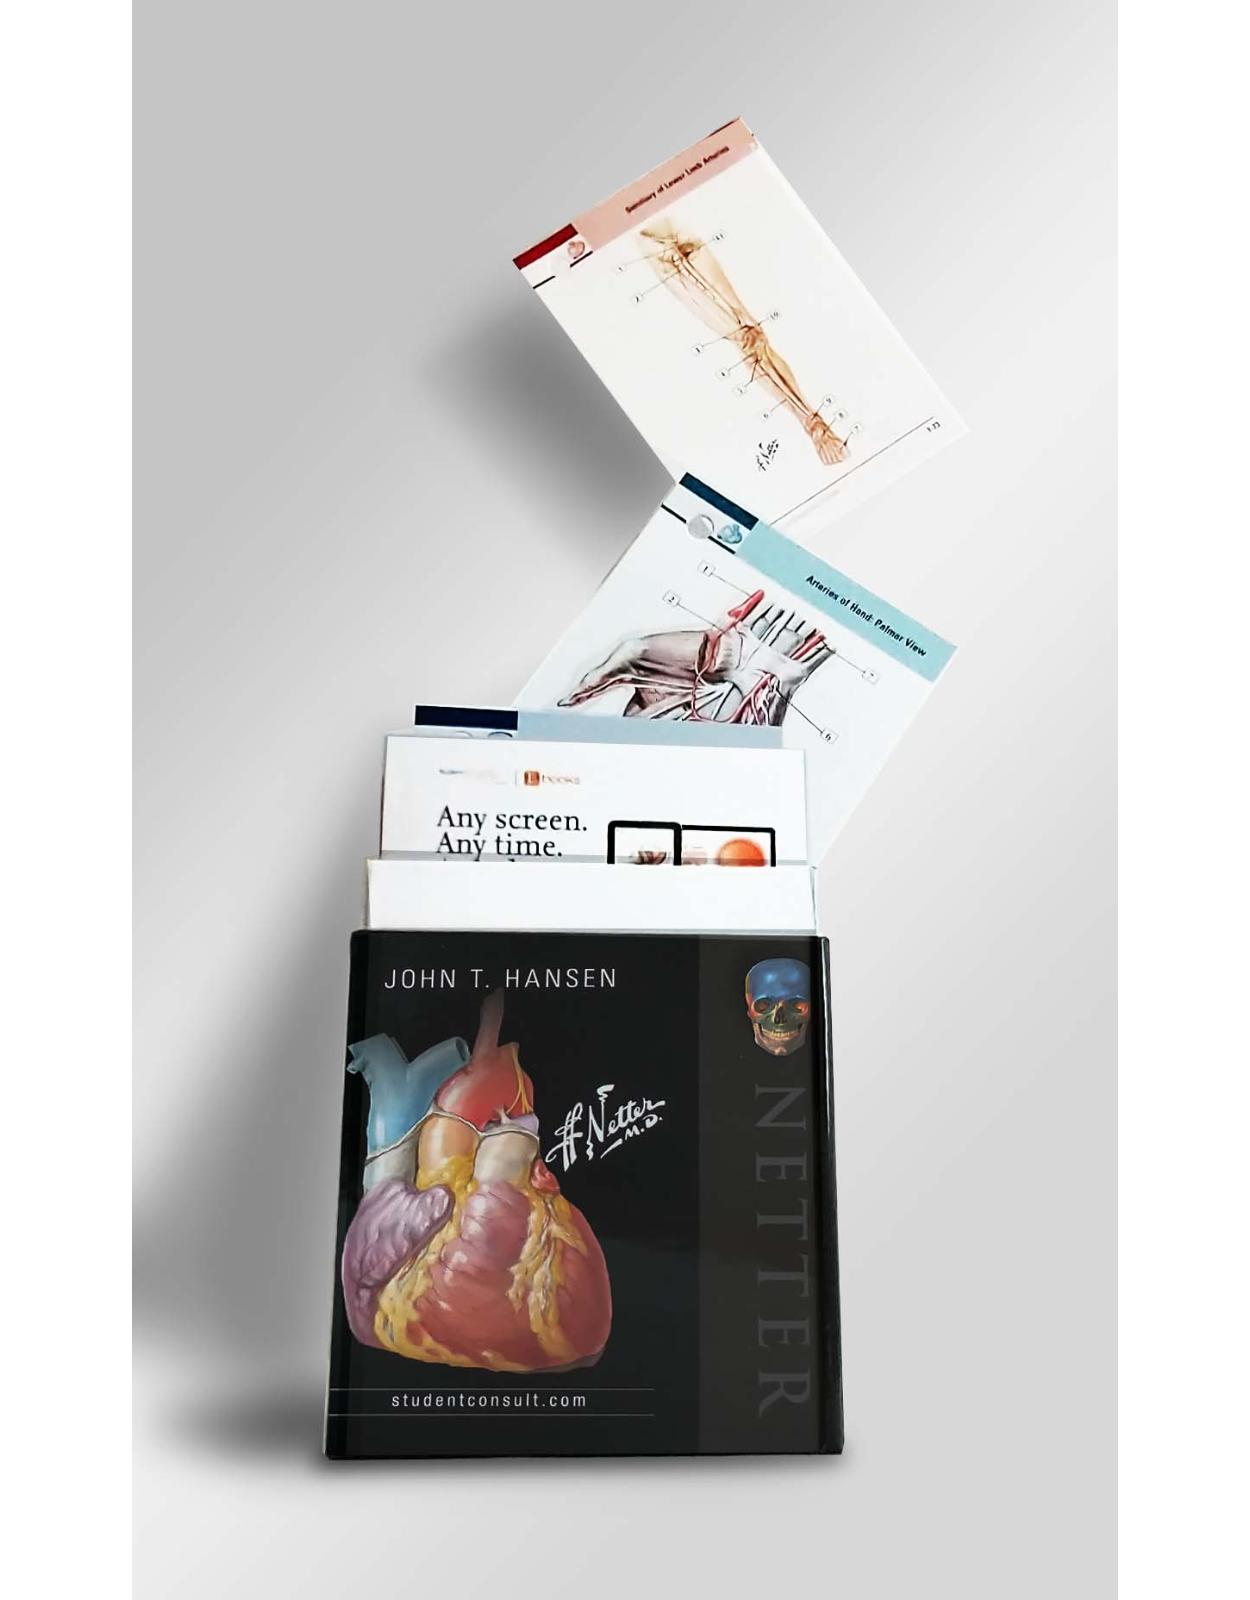 Netter s Anatomy Flash Cards, 5e (Netter Basic Science) 